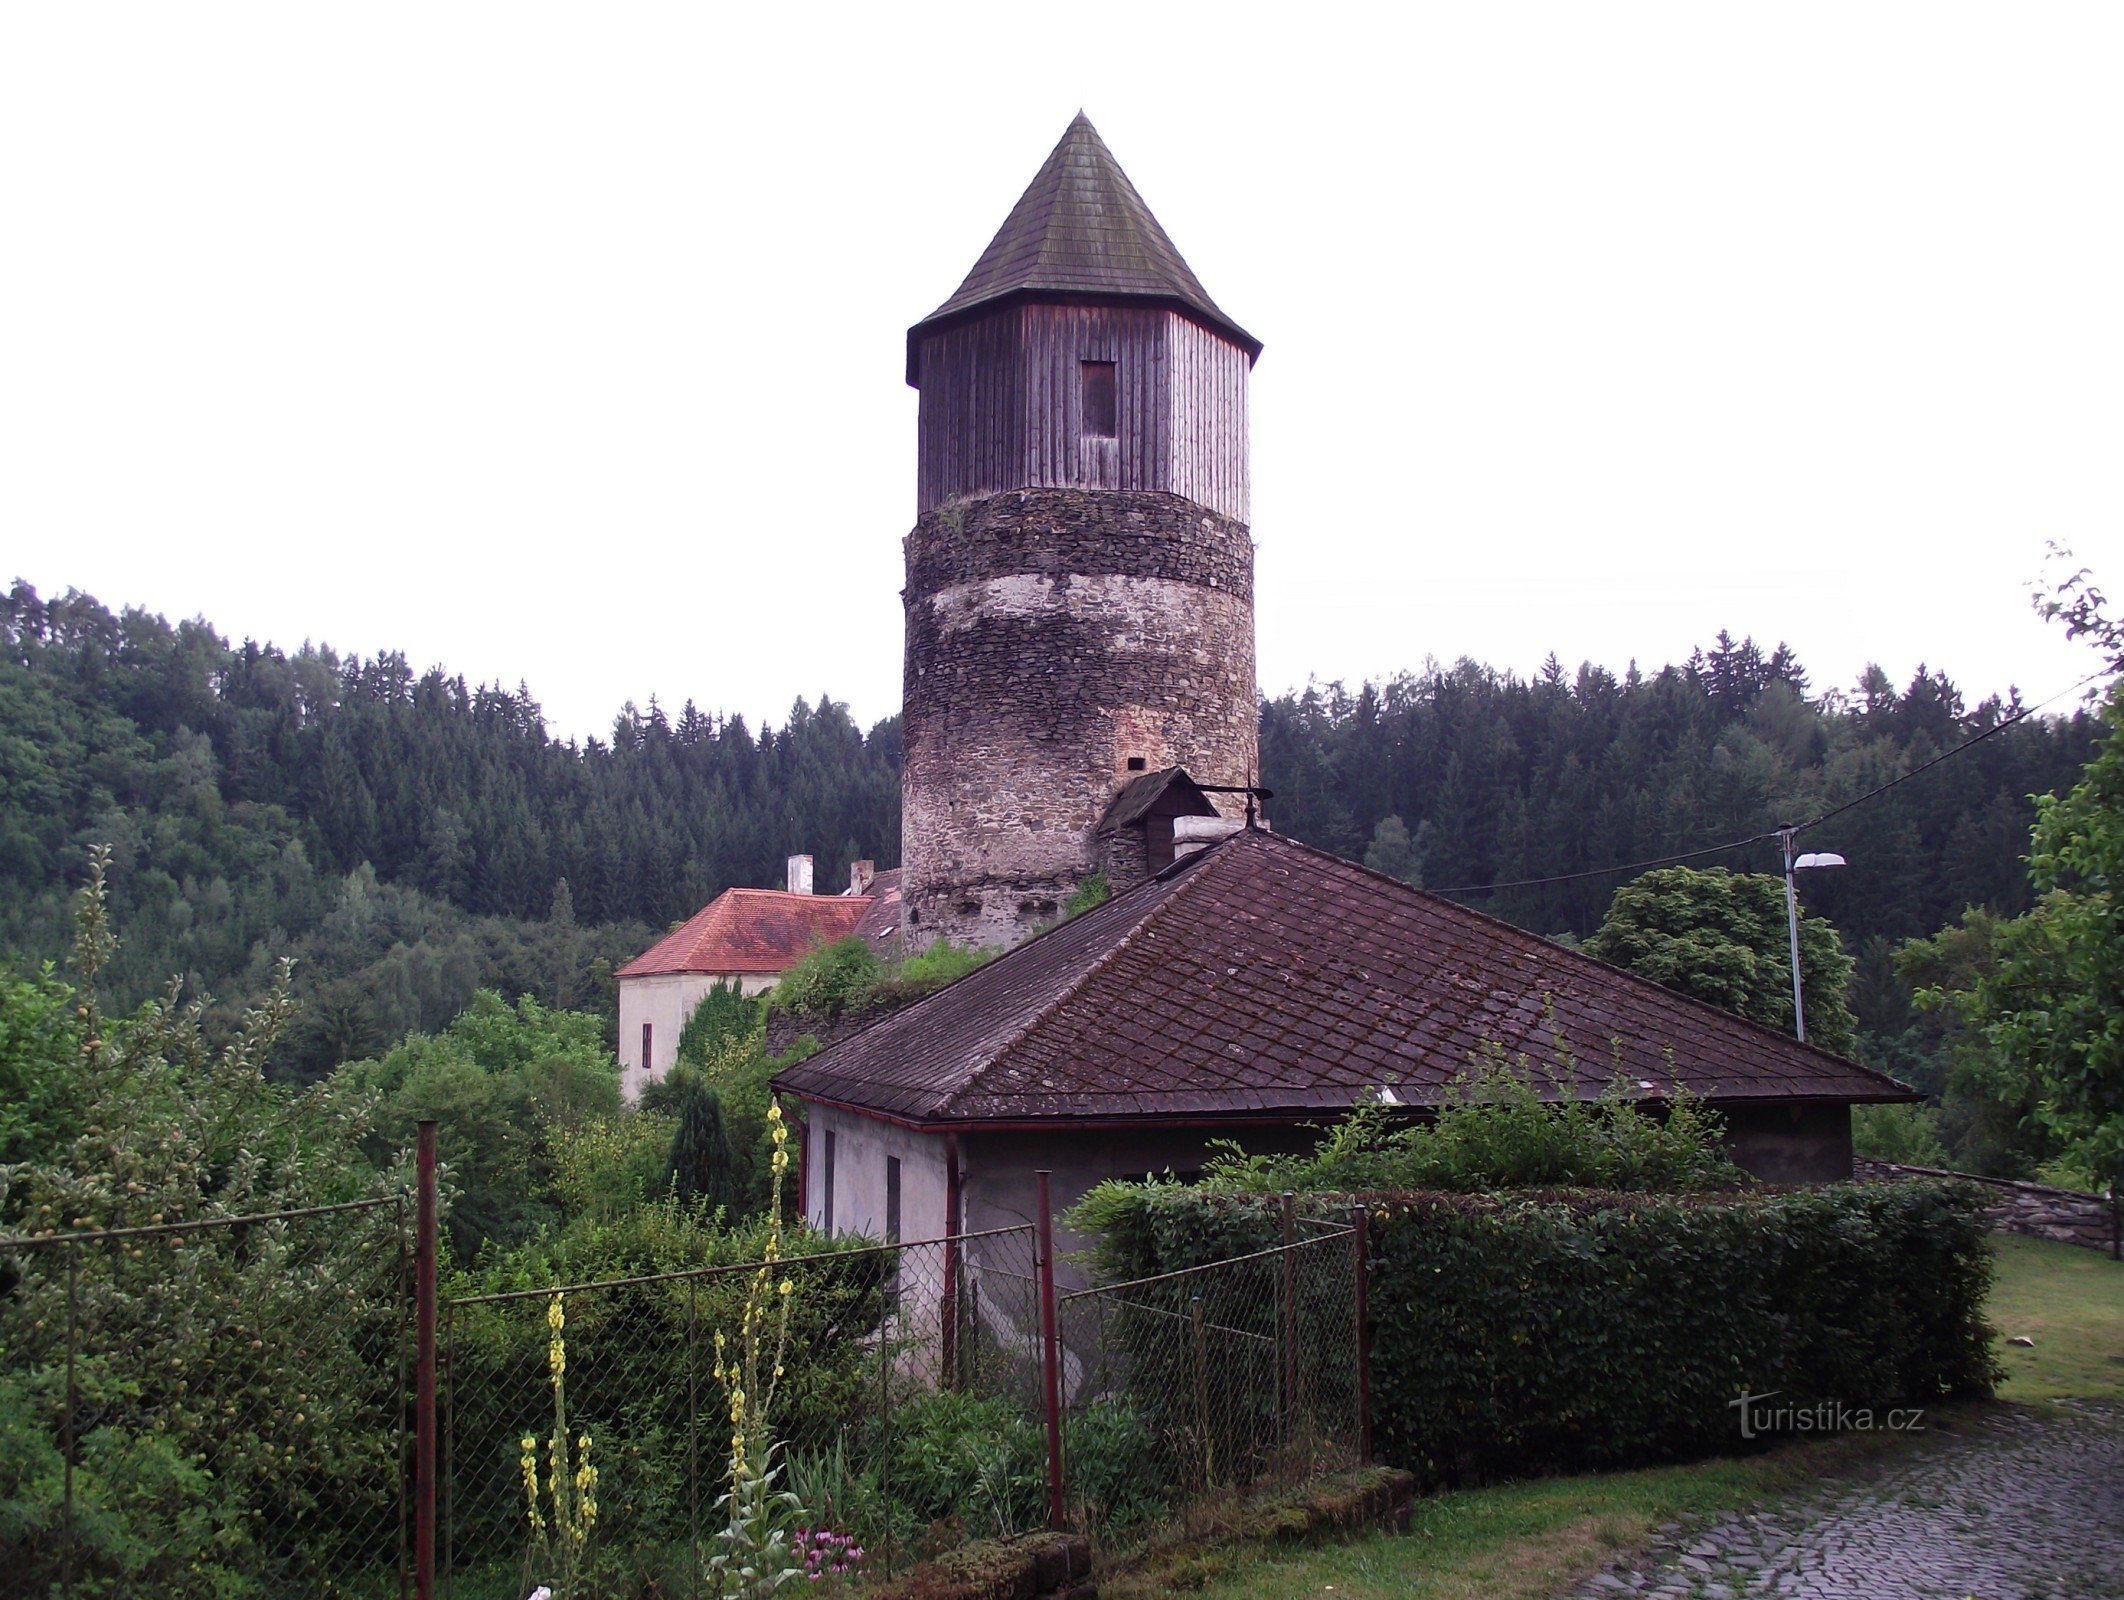 Rataje nad Sázavou – замок Піркштейн, вікаріат і принц Баджая